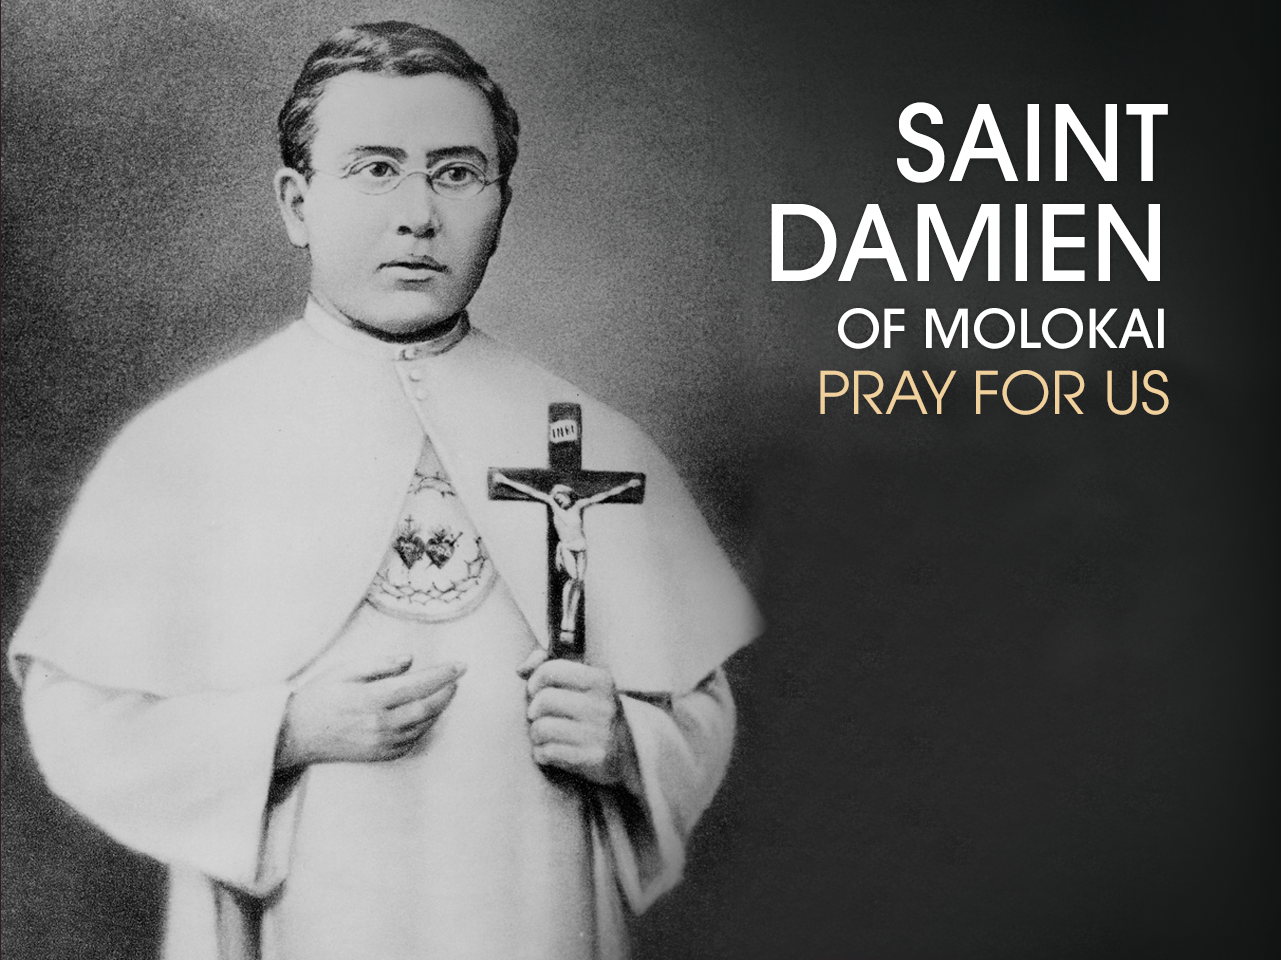 St. Damien de Veuster of Molokai